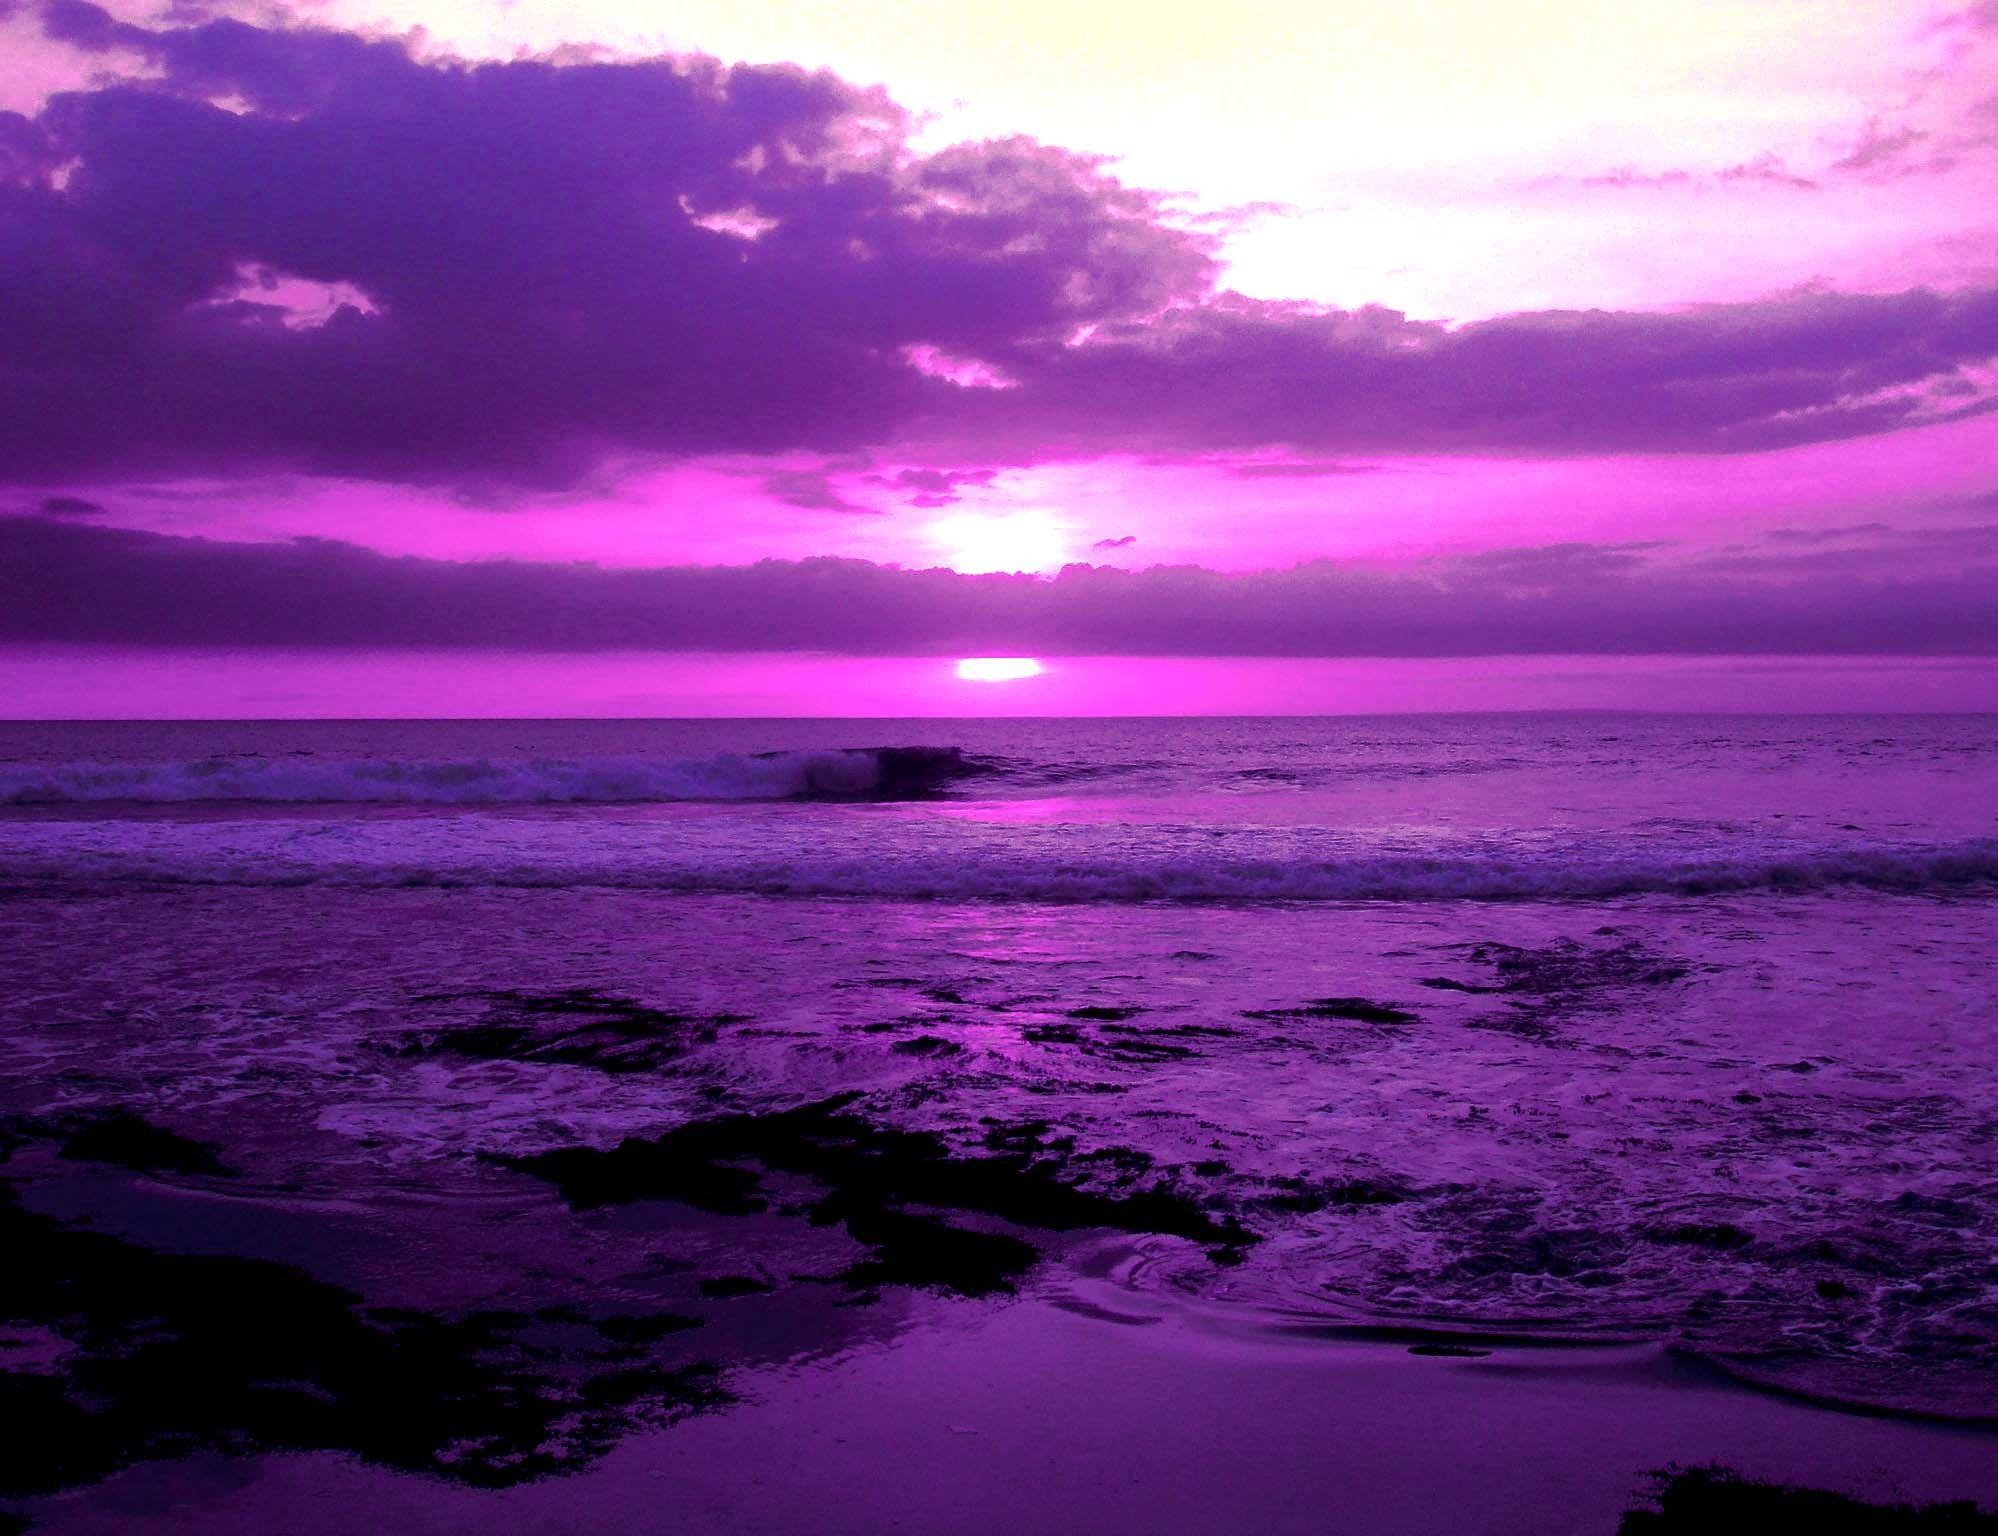 Tận hưởng sắc tím của cảnh vật thiên nhiên (Purple Scenery) với những bức ảnh tuyệt đẹp. Hãy cùng chiêm ngưỡng những hình ảnh đầy màu sắc và lãng mạn để thôn thức trí tưởng tượng của bạn.